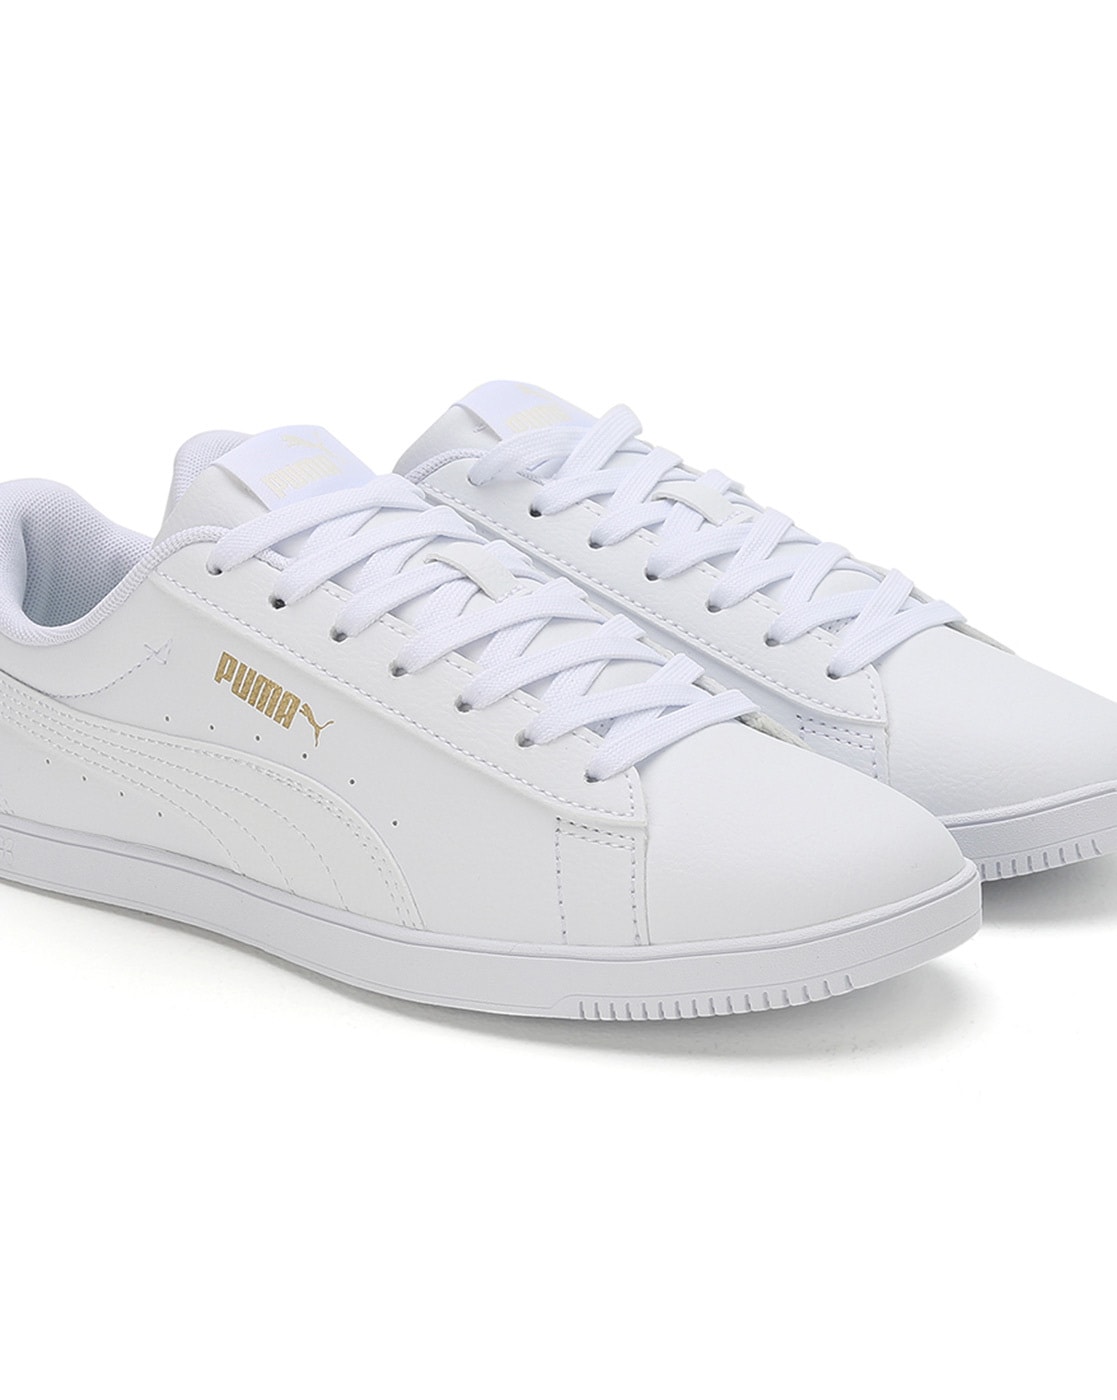 Buy Puma White Men G.Vilas 2.0 Lace-Up Sneakers Online at Regal Shoes. |  8995123